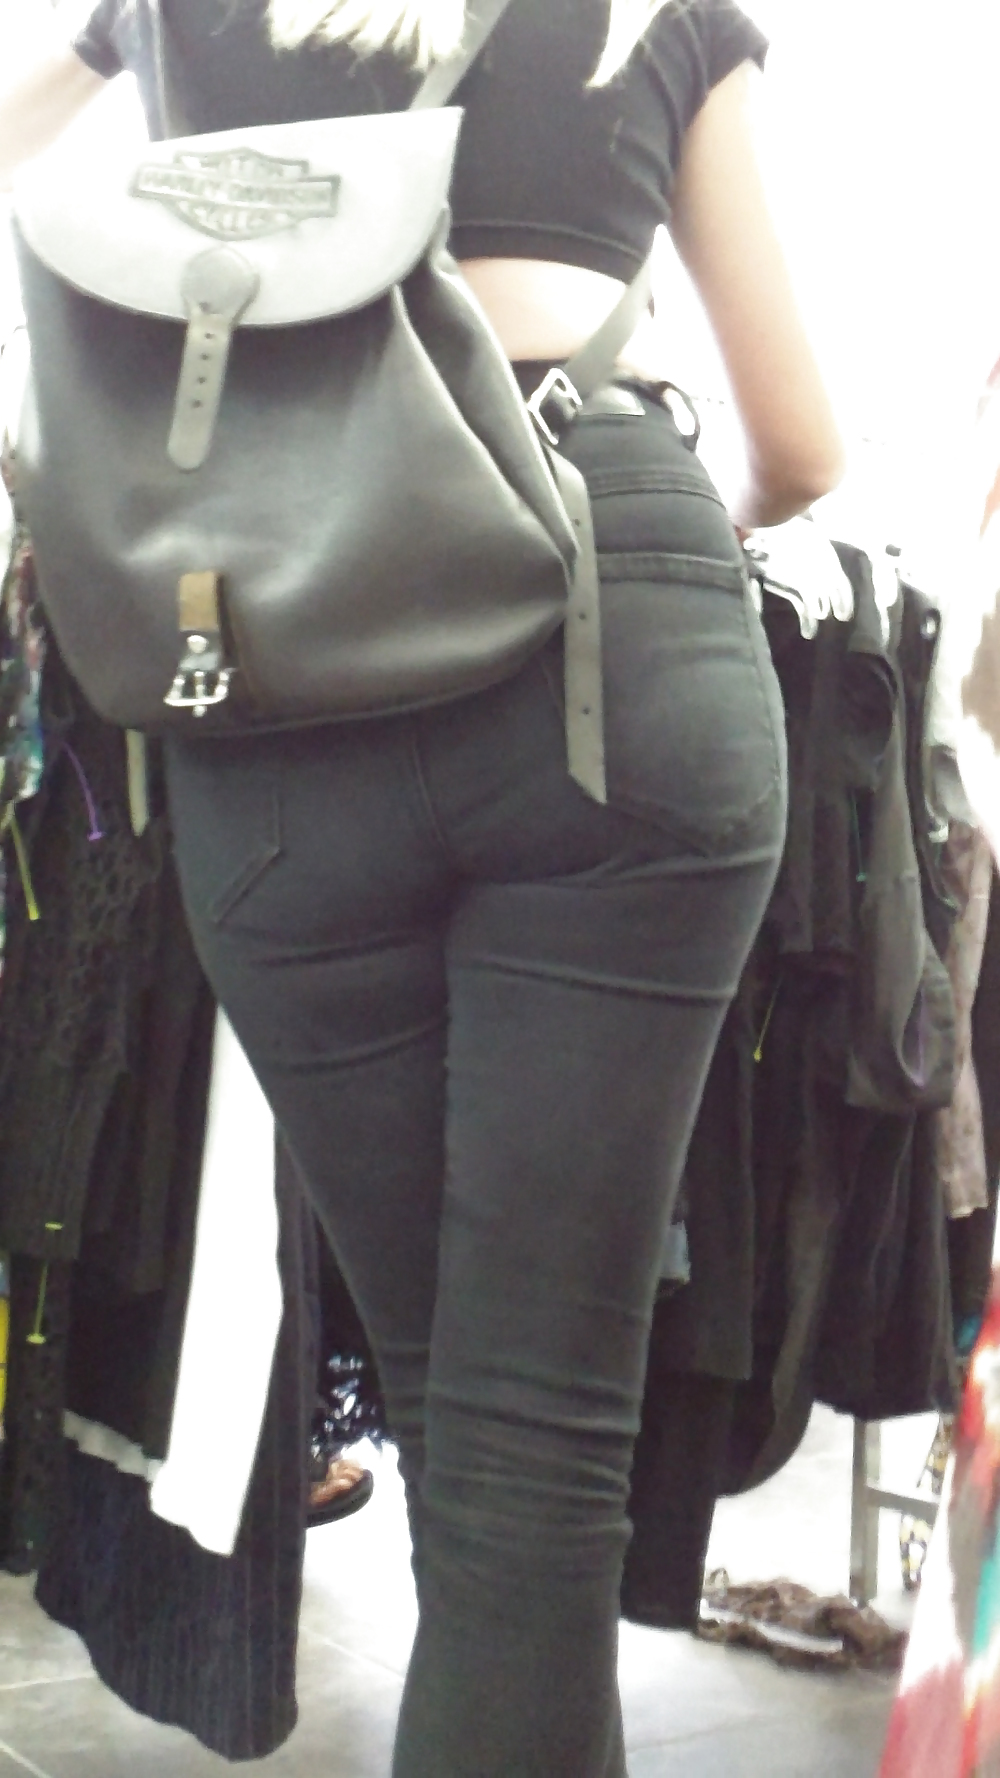 Teen ass & butt in jean shorts shopping #18777586